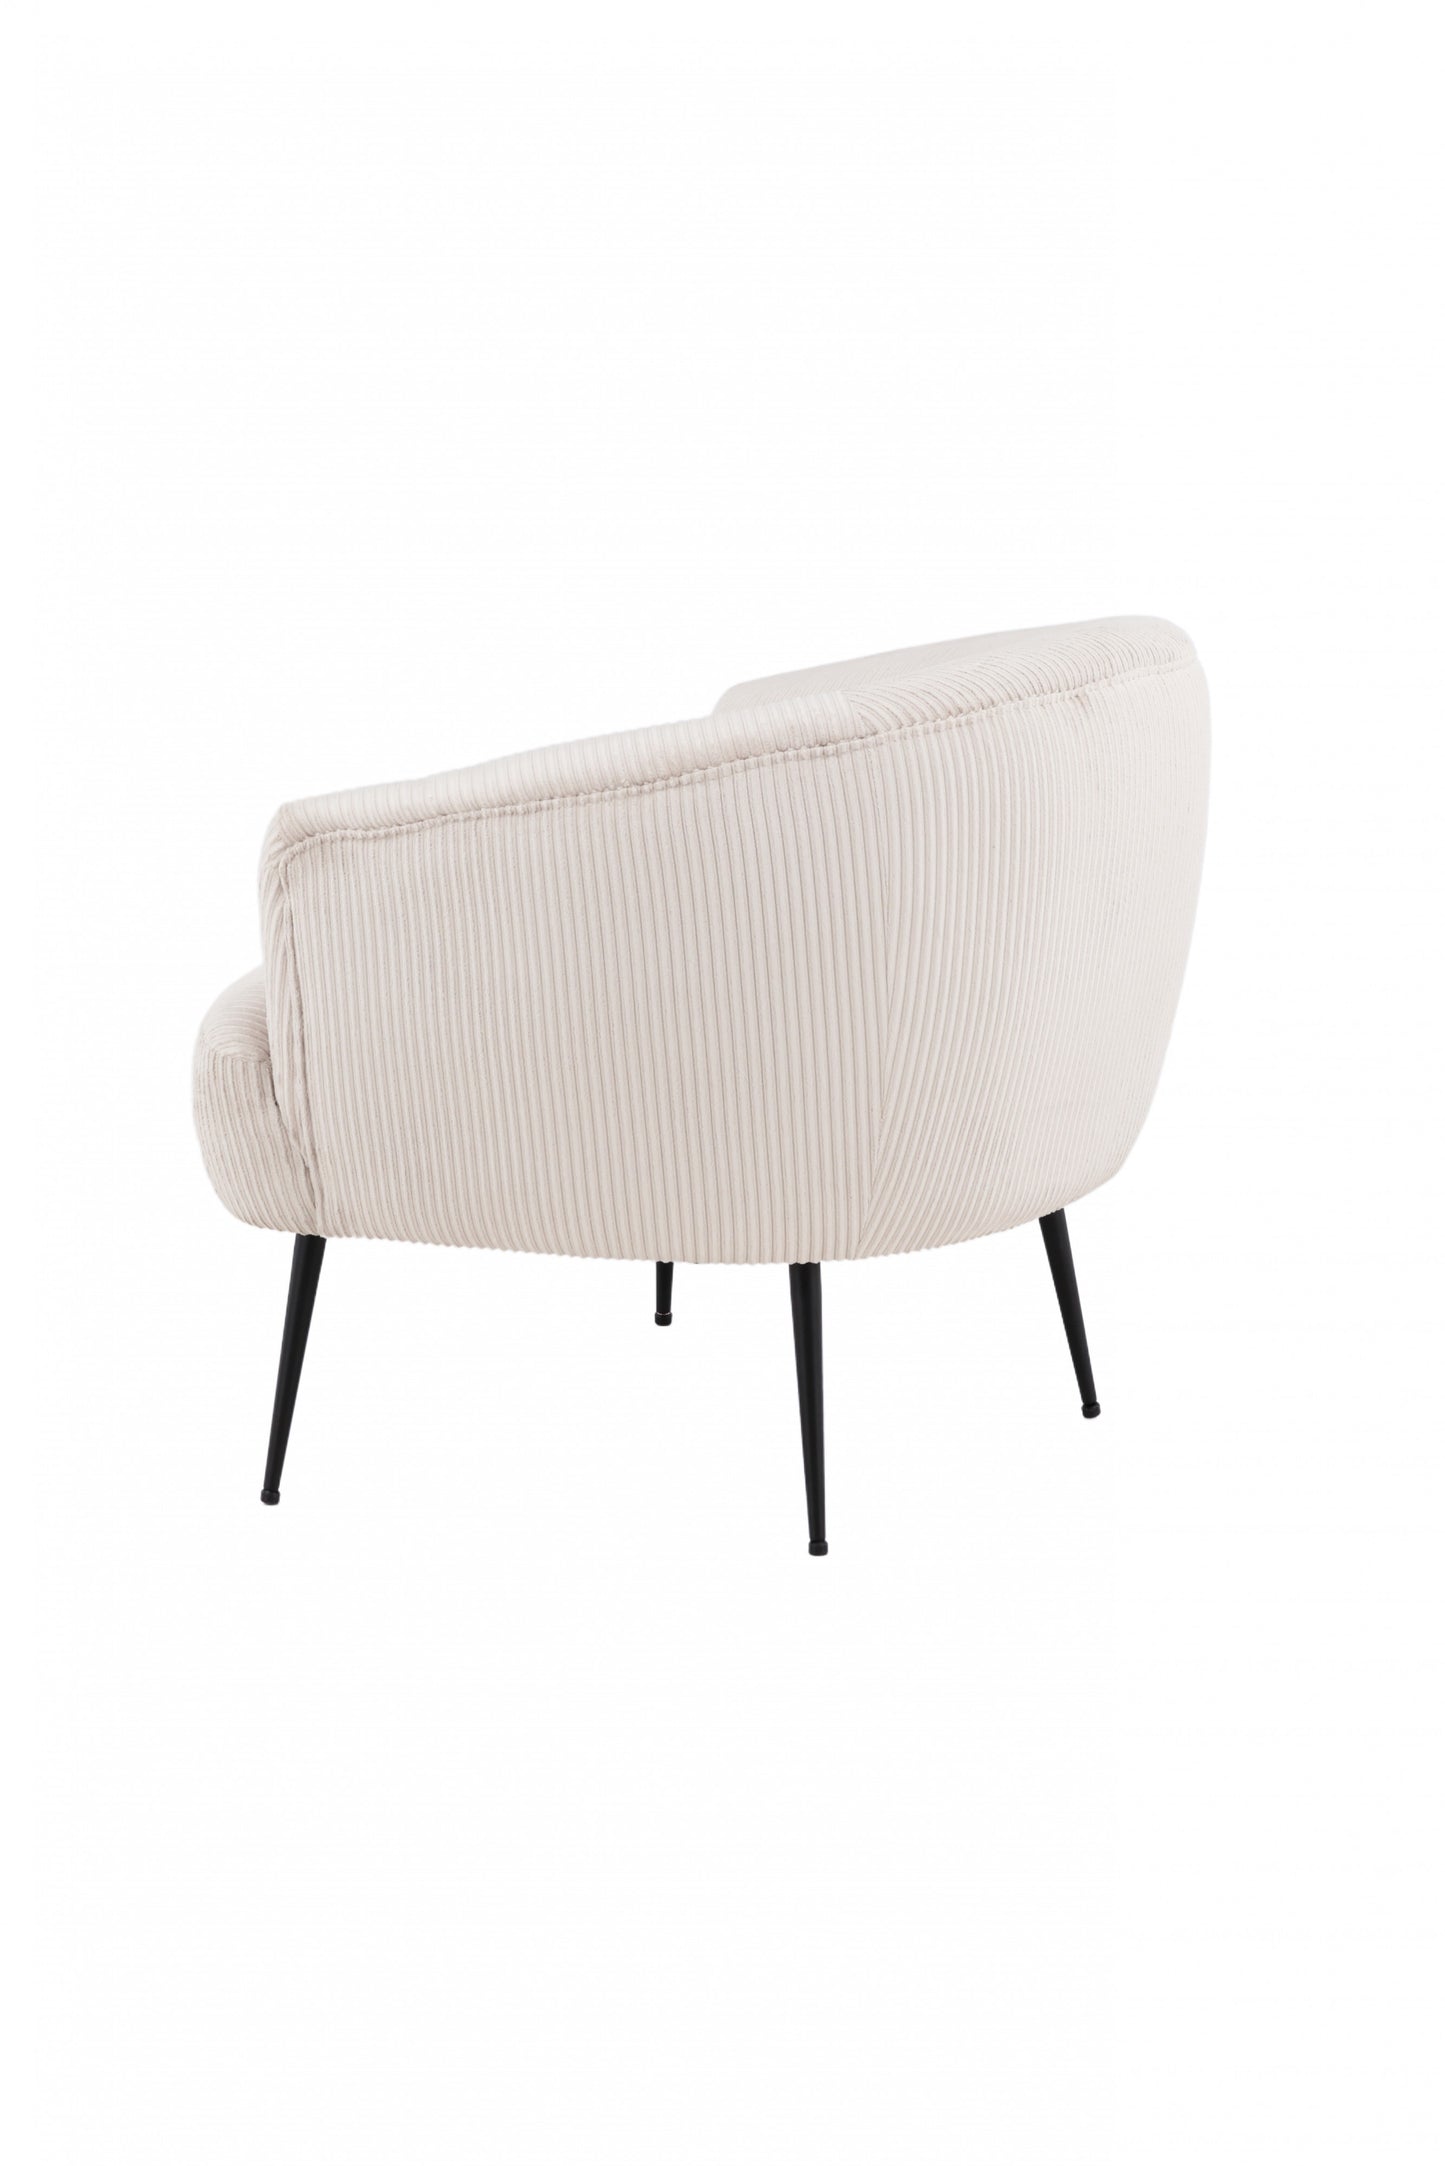 Venture-Design | Derry Lounge Chair - Schwarz / Beige Cord